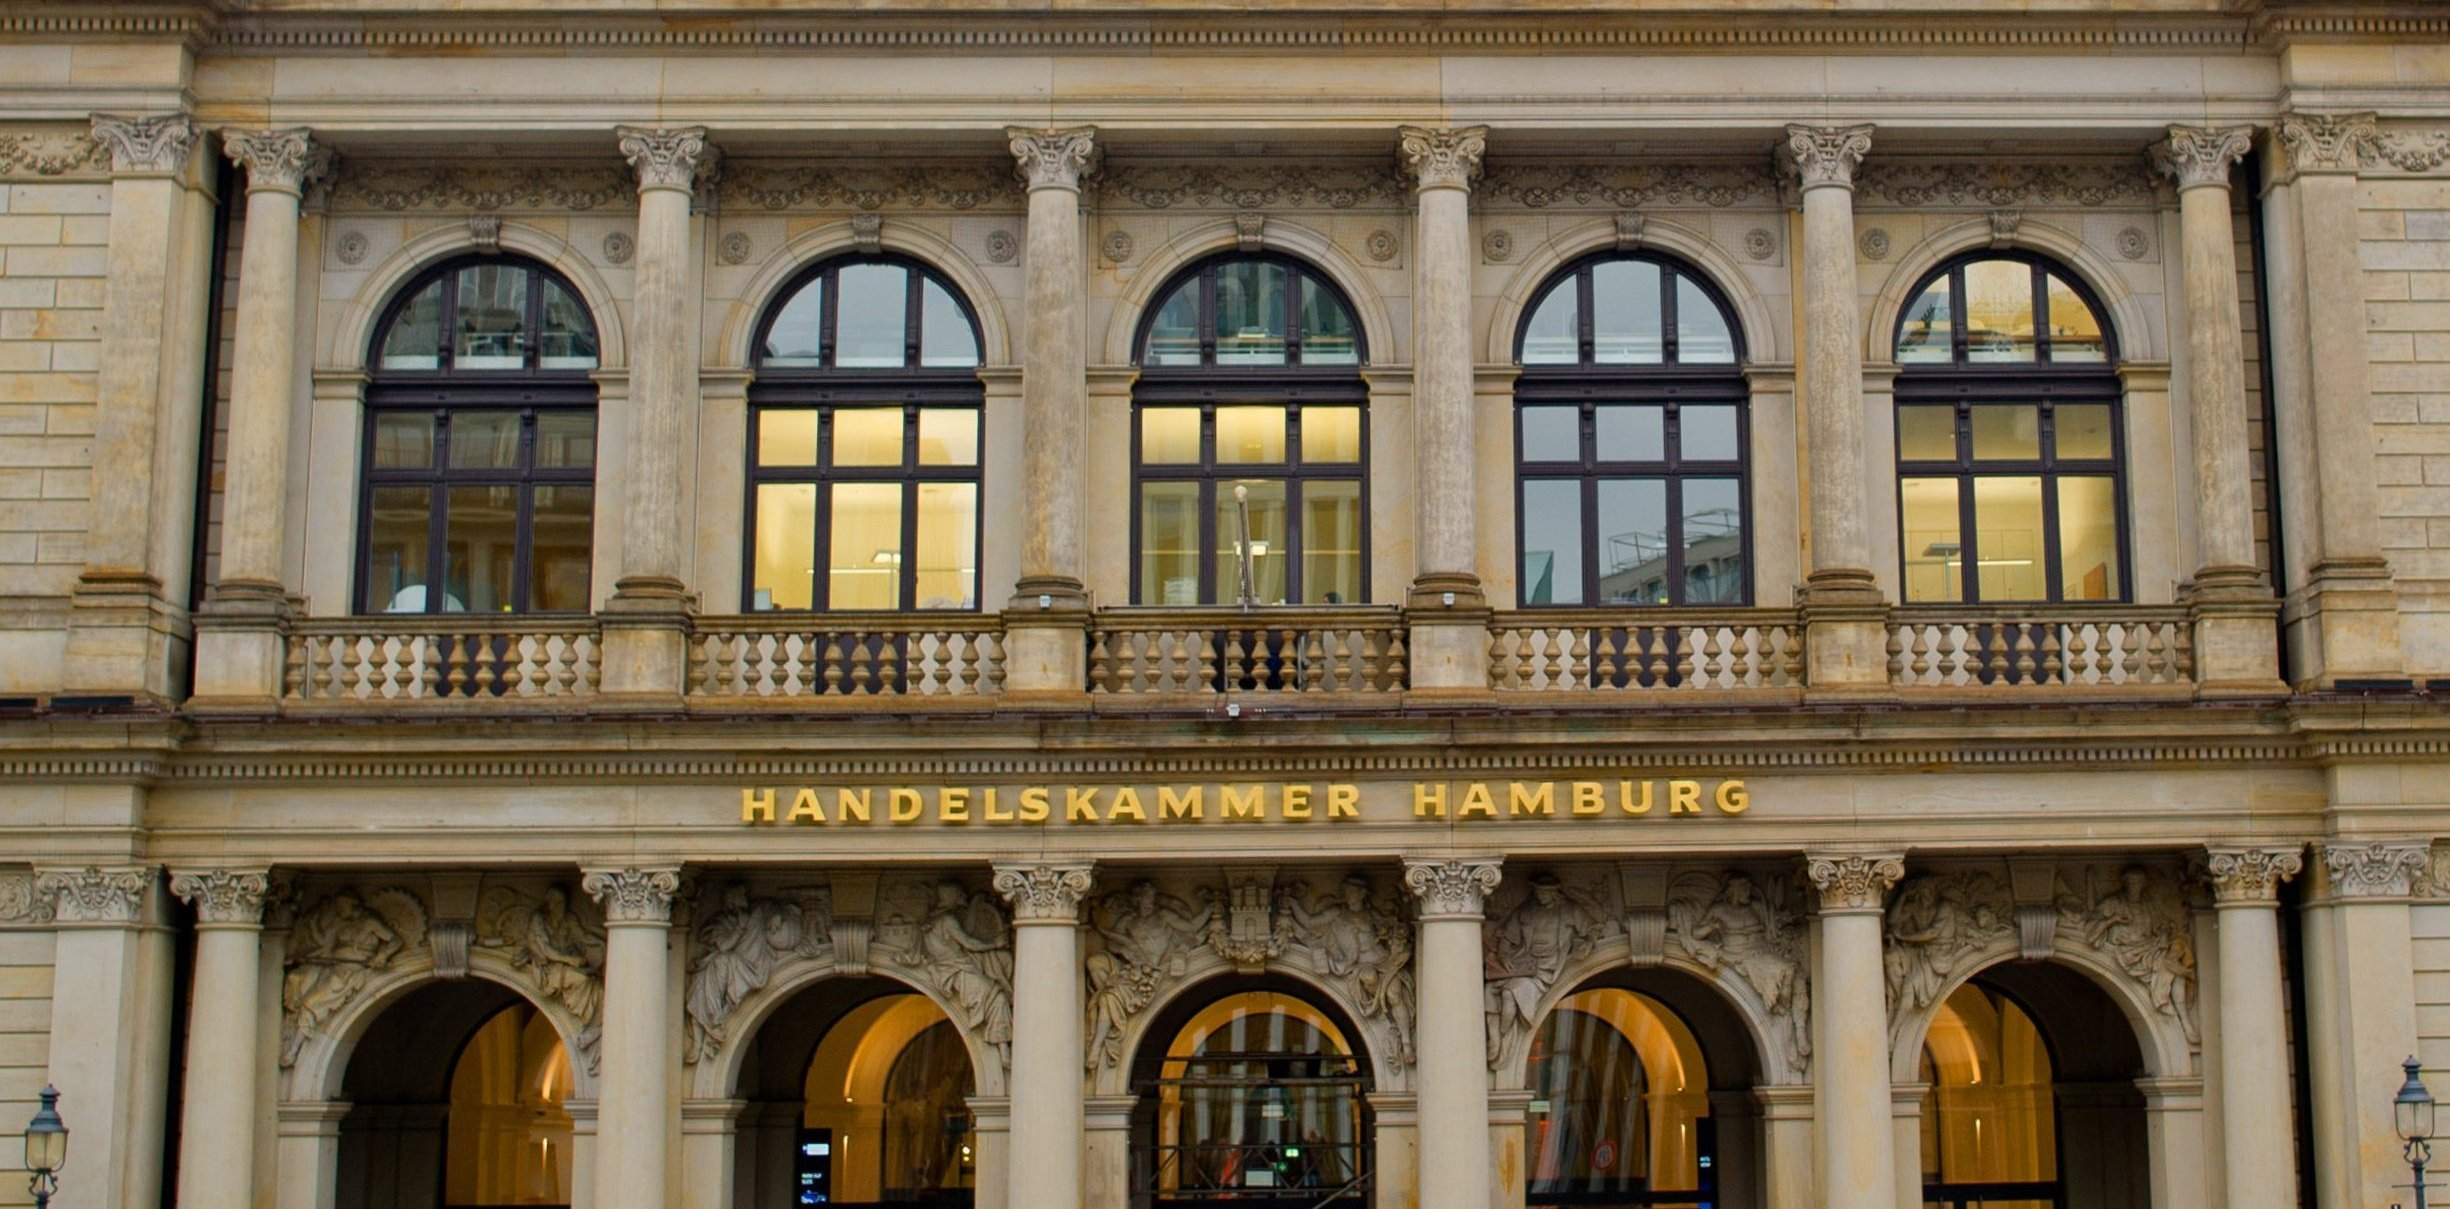 Blick auf die Fassade der Handelskammer Hamburg.